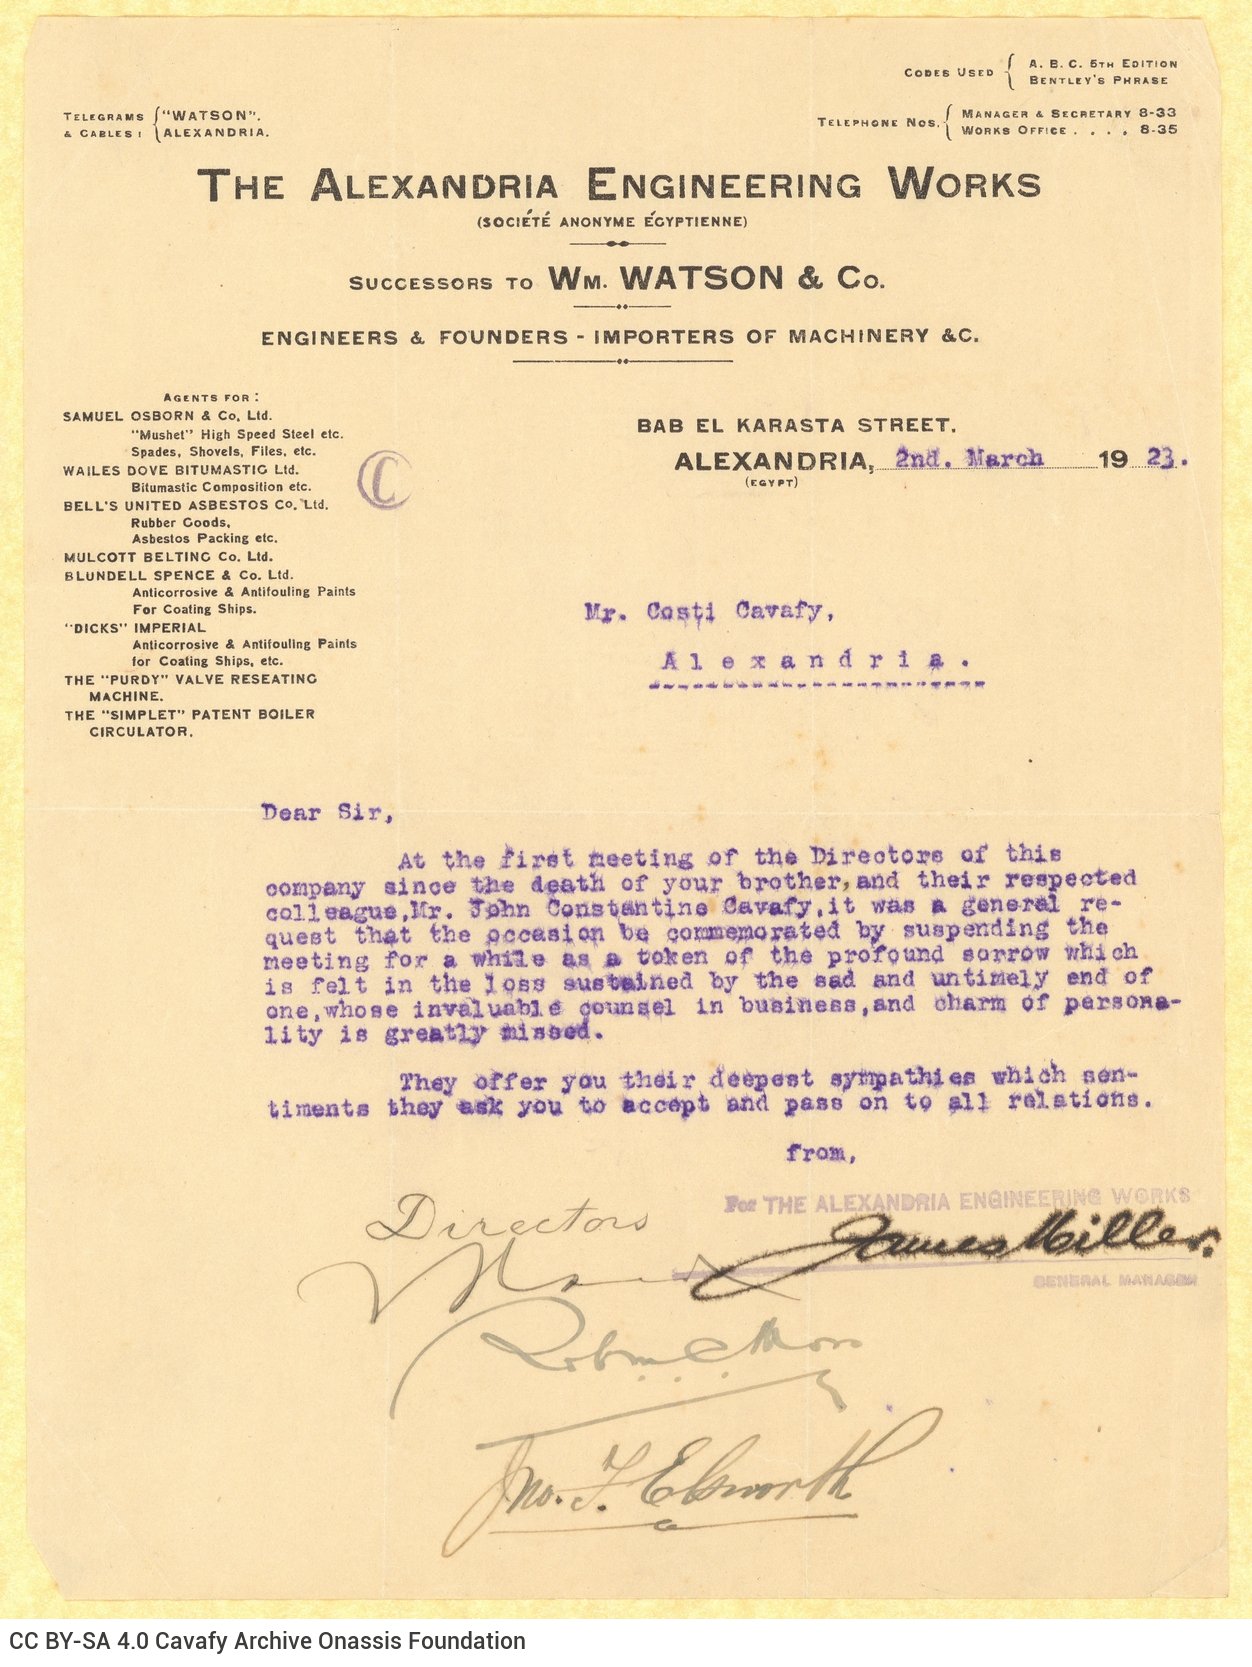 Δακτυλόγραφη επιστολή της ανώνυμης εταιρείας The Alexandria Engineering Works προ�